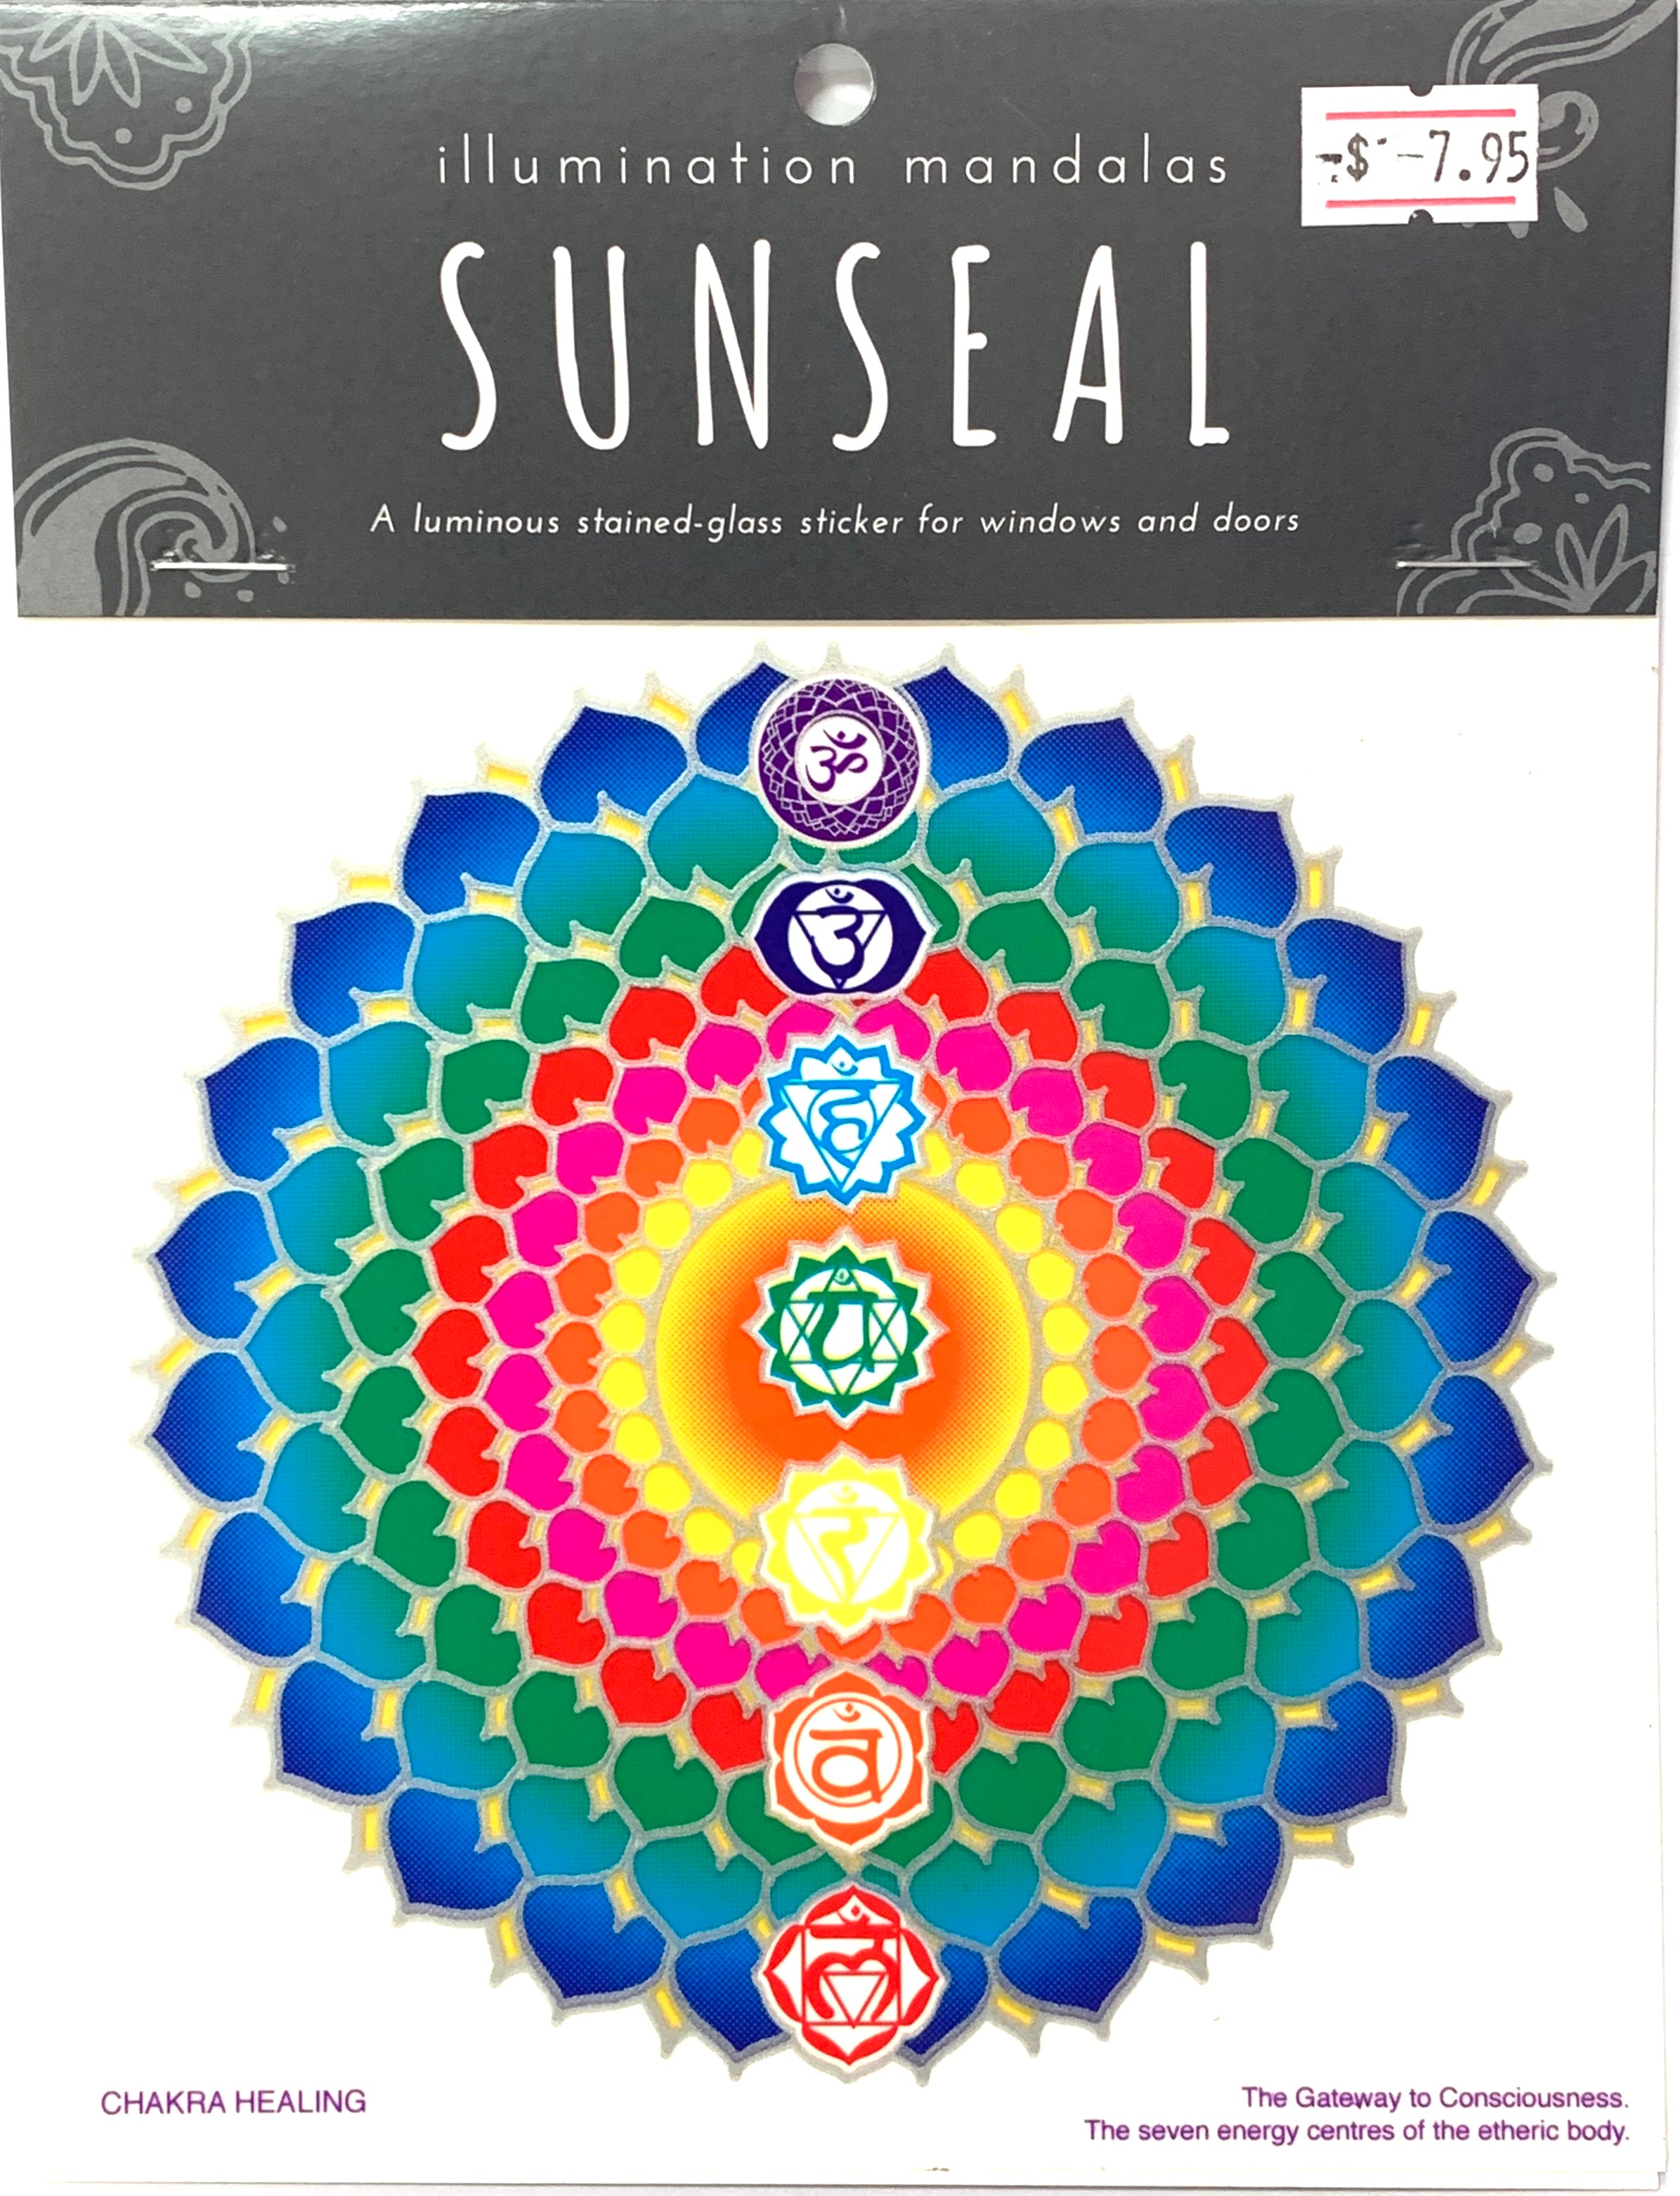 Sunseal Illumination Mandalas